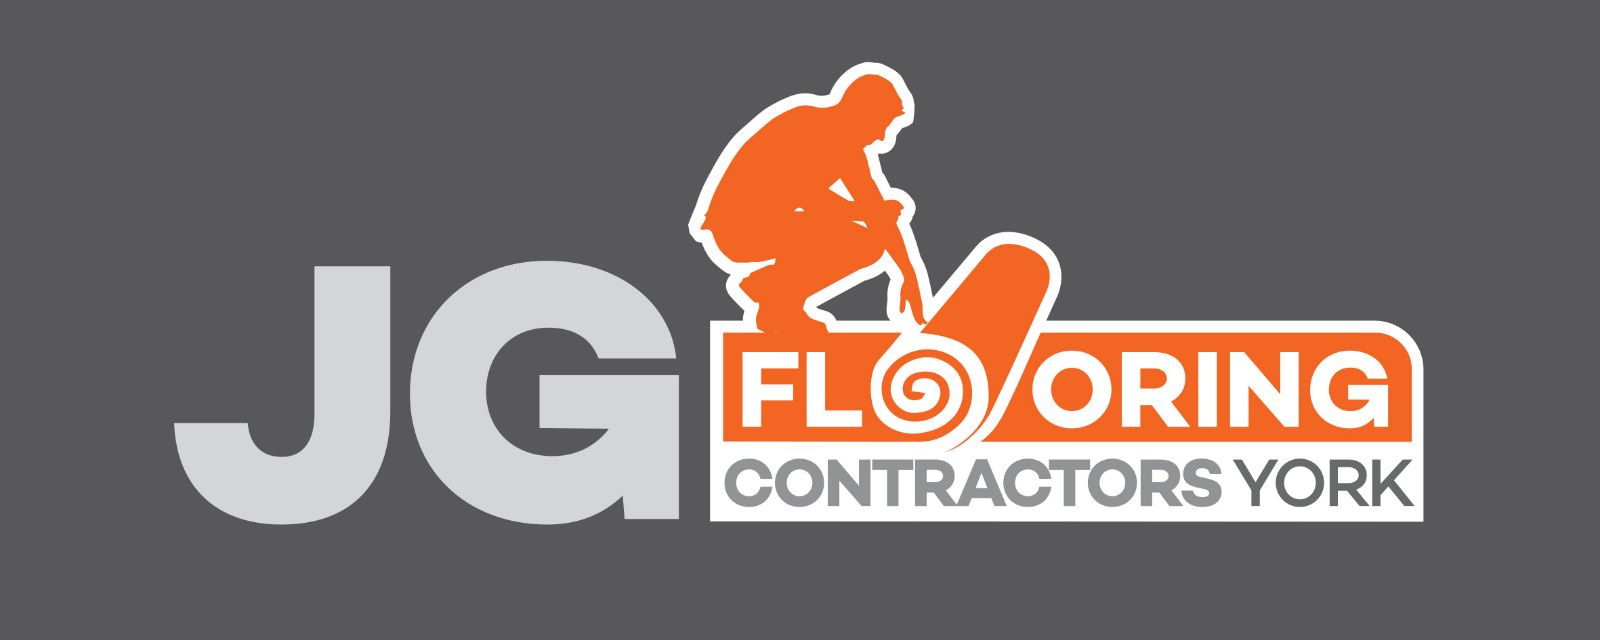 JG Flooring Contractors York